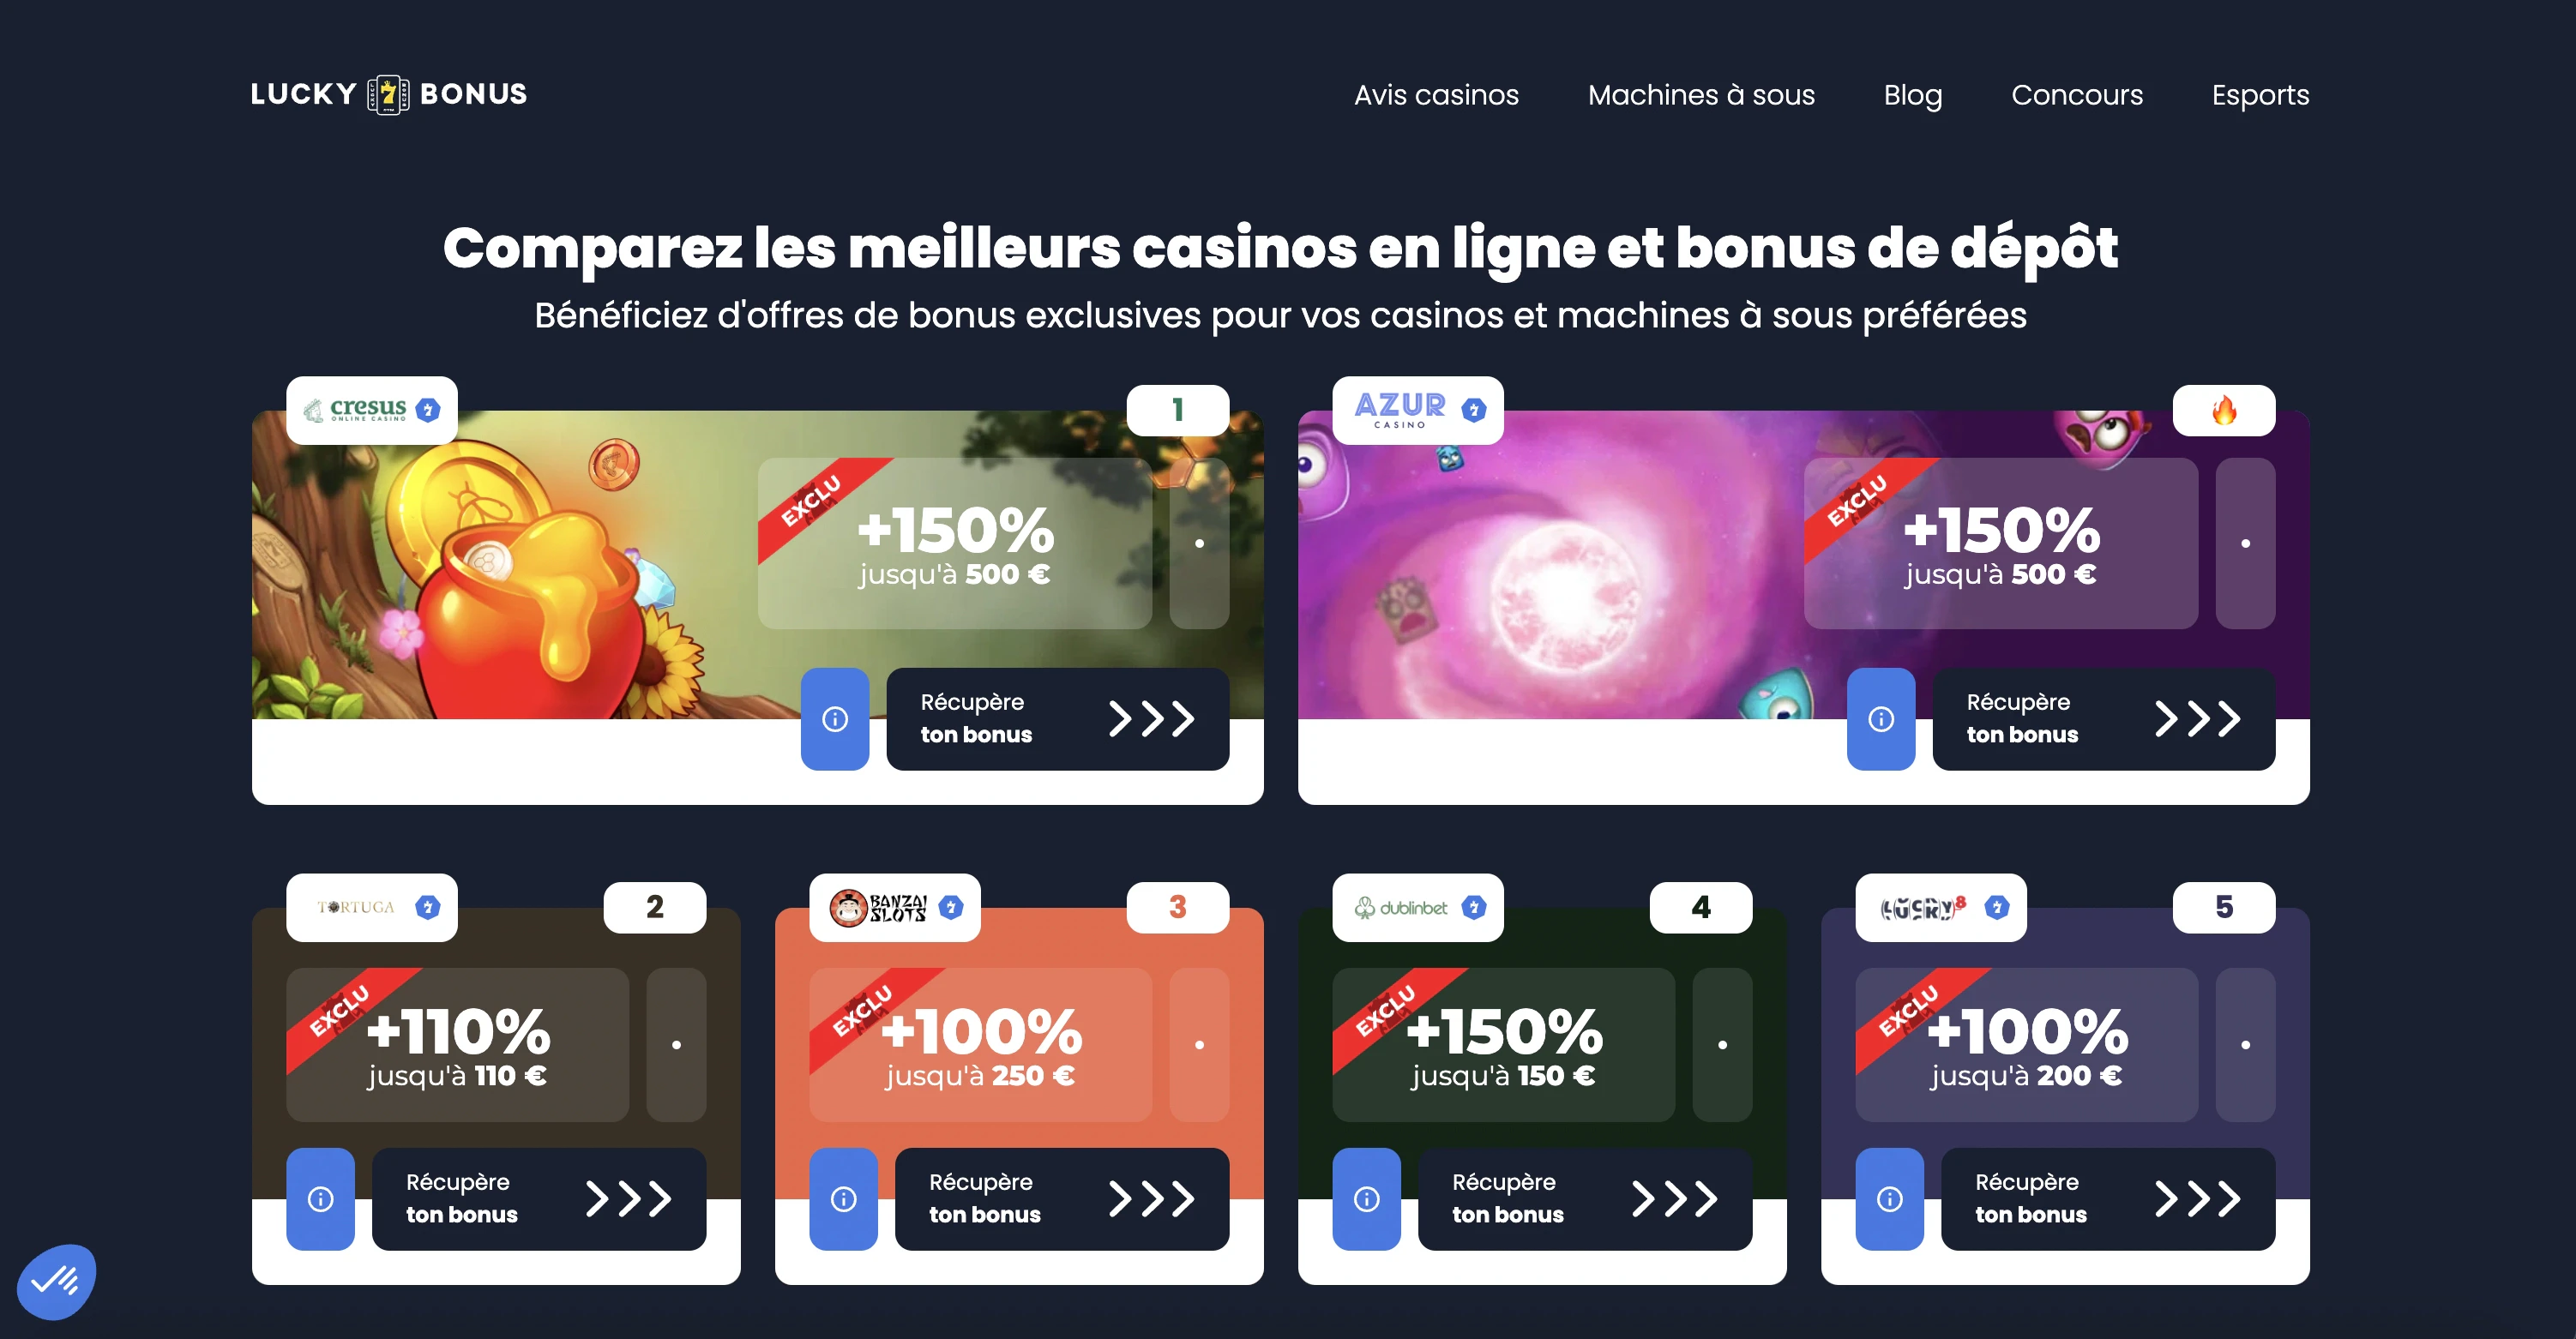 Lucky7Bonus met à votre disposition des offres de bienvenue unique sur le marché du casino en ligne